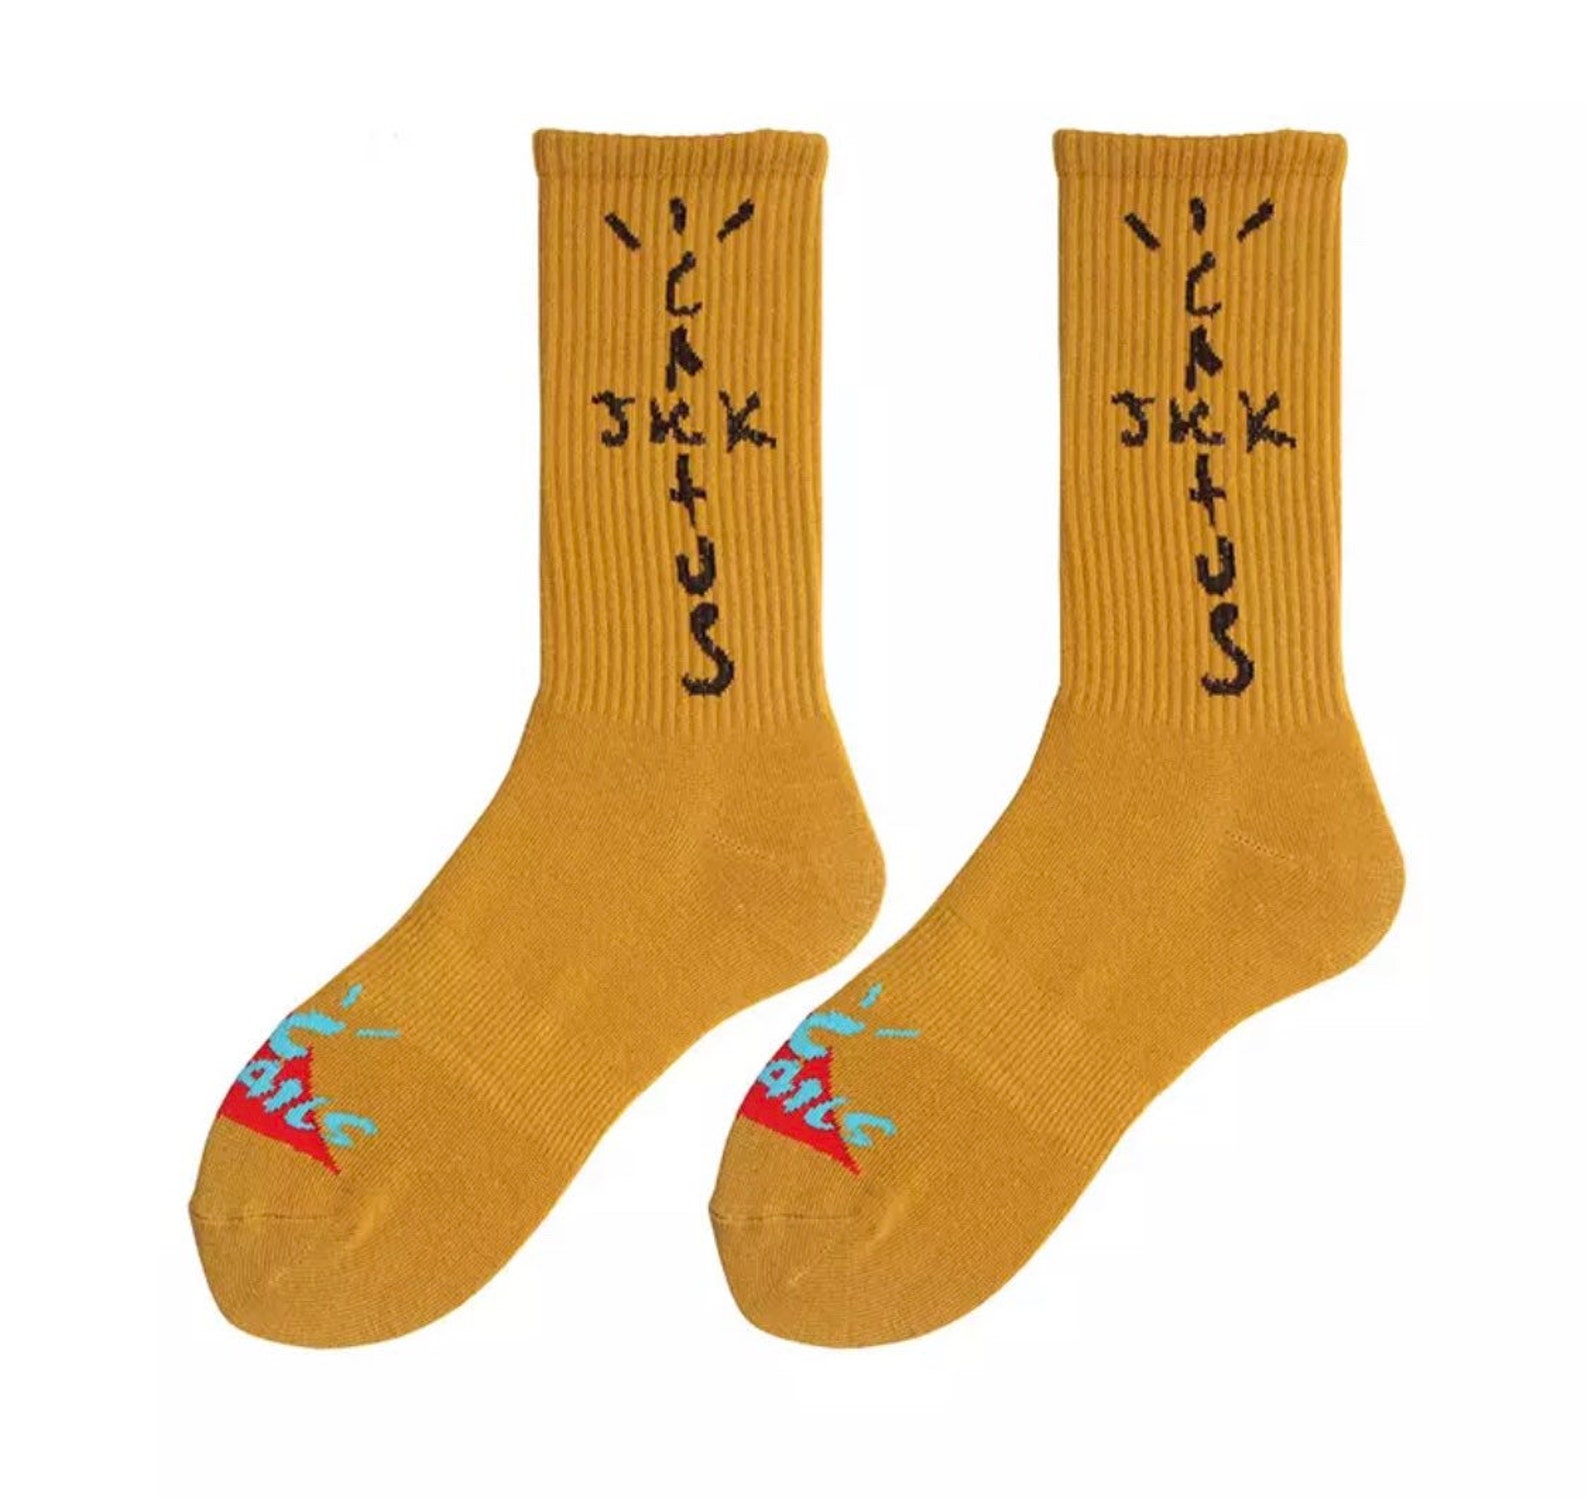 Travis Scott x McDonalds socks | Etsy